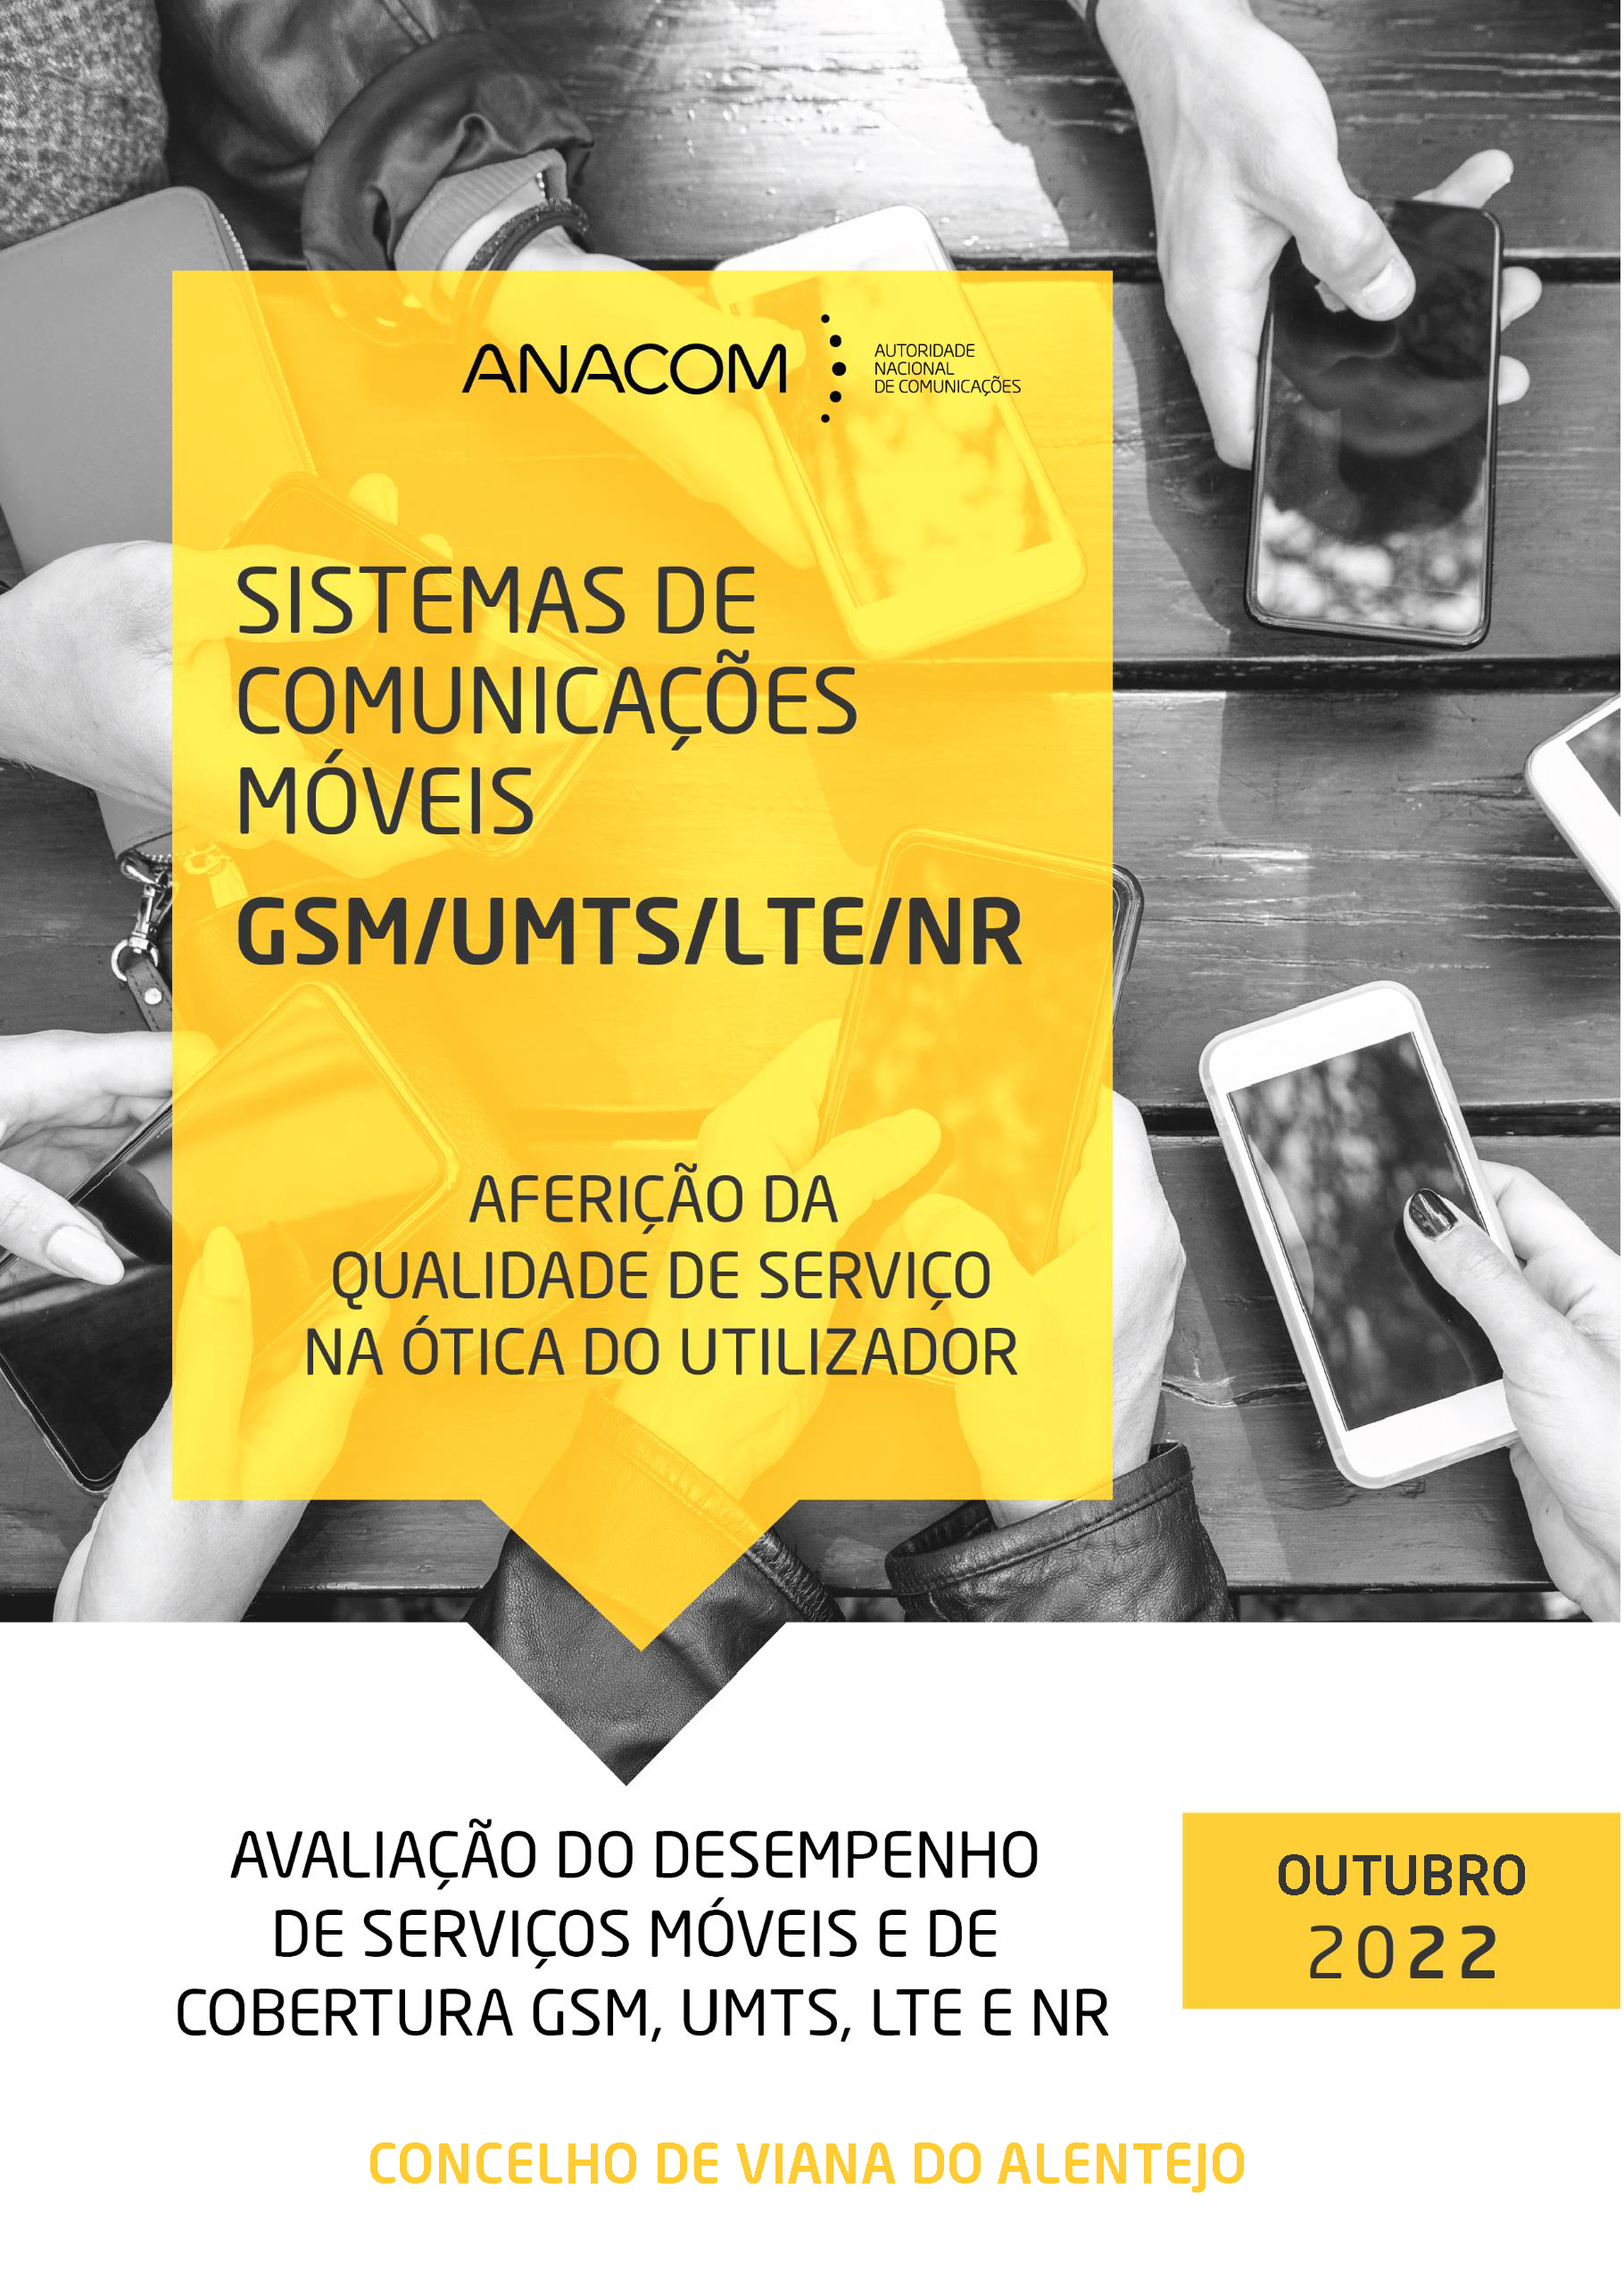 Avaliação do desempenho de serviços móveis e de cobertura GSM, UMTS, LTE e NR no Concelho de Viana do Alentejo